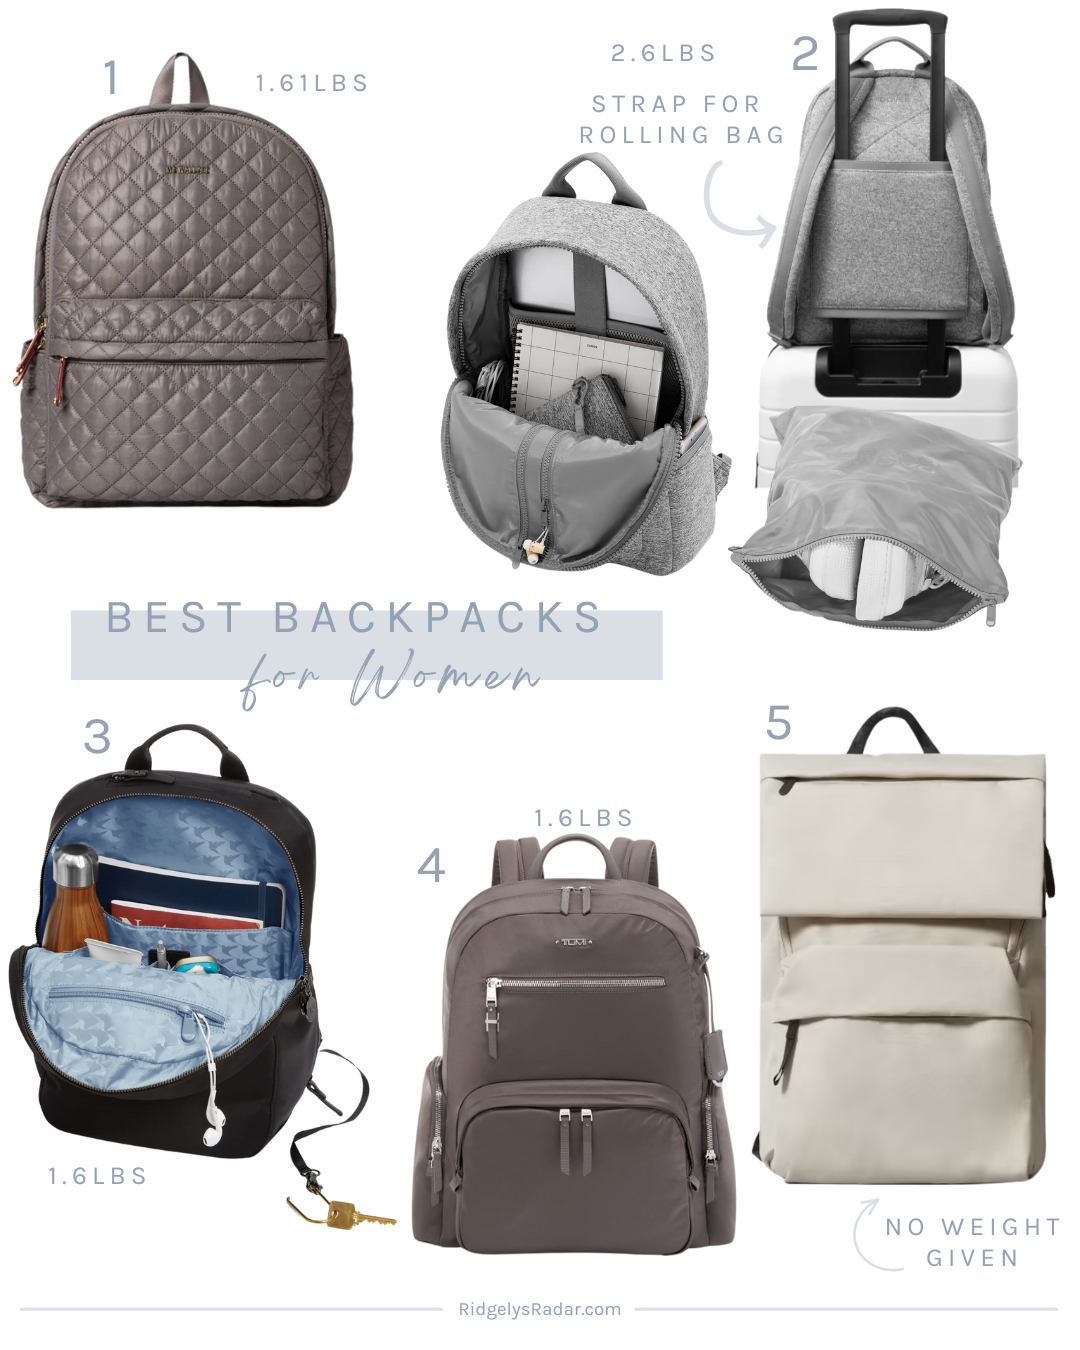 Best Fashionable Travel Backpacks for Women - Ridgely's Radar